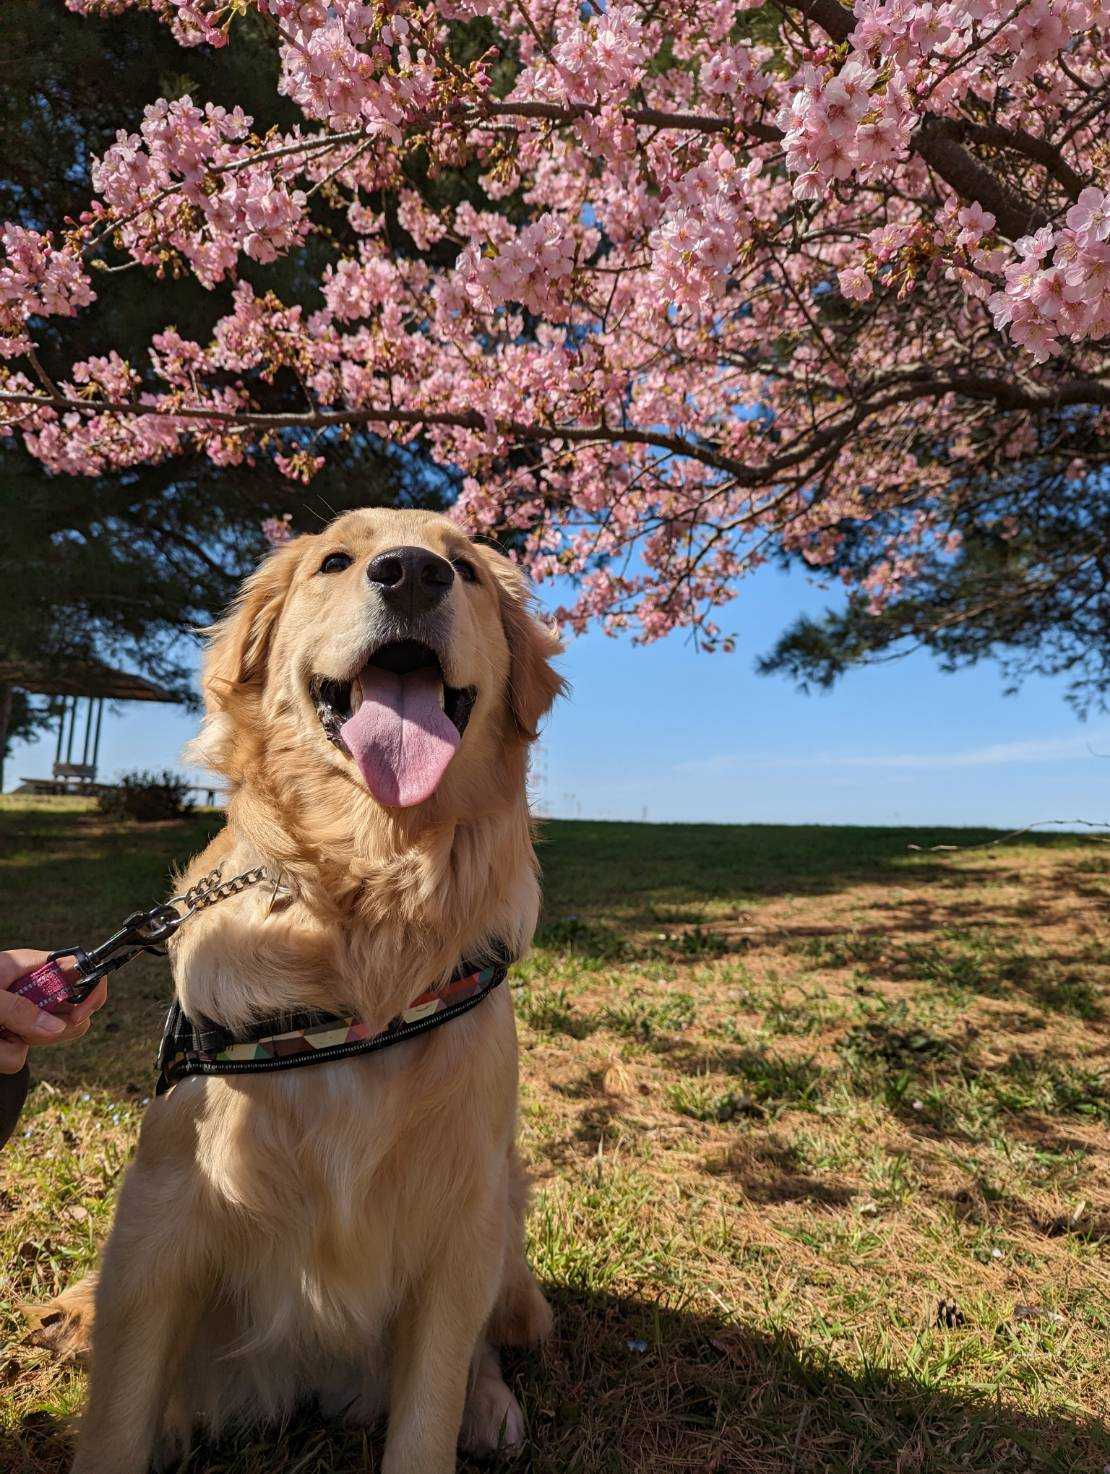 桜の花が咲いた木の下にゴールデンレトリーバーが舌を出して座っている